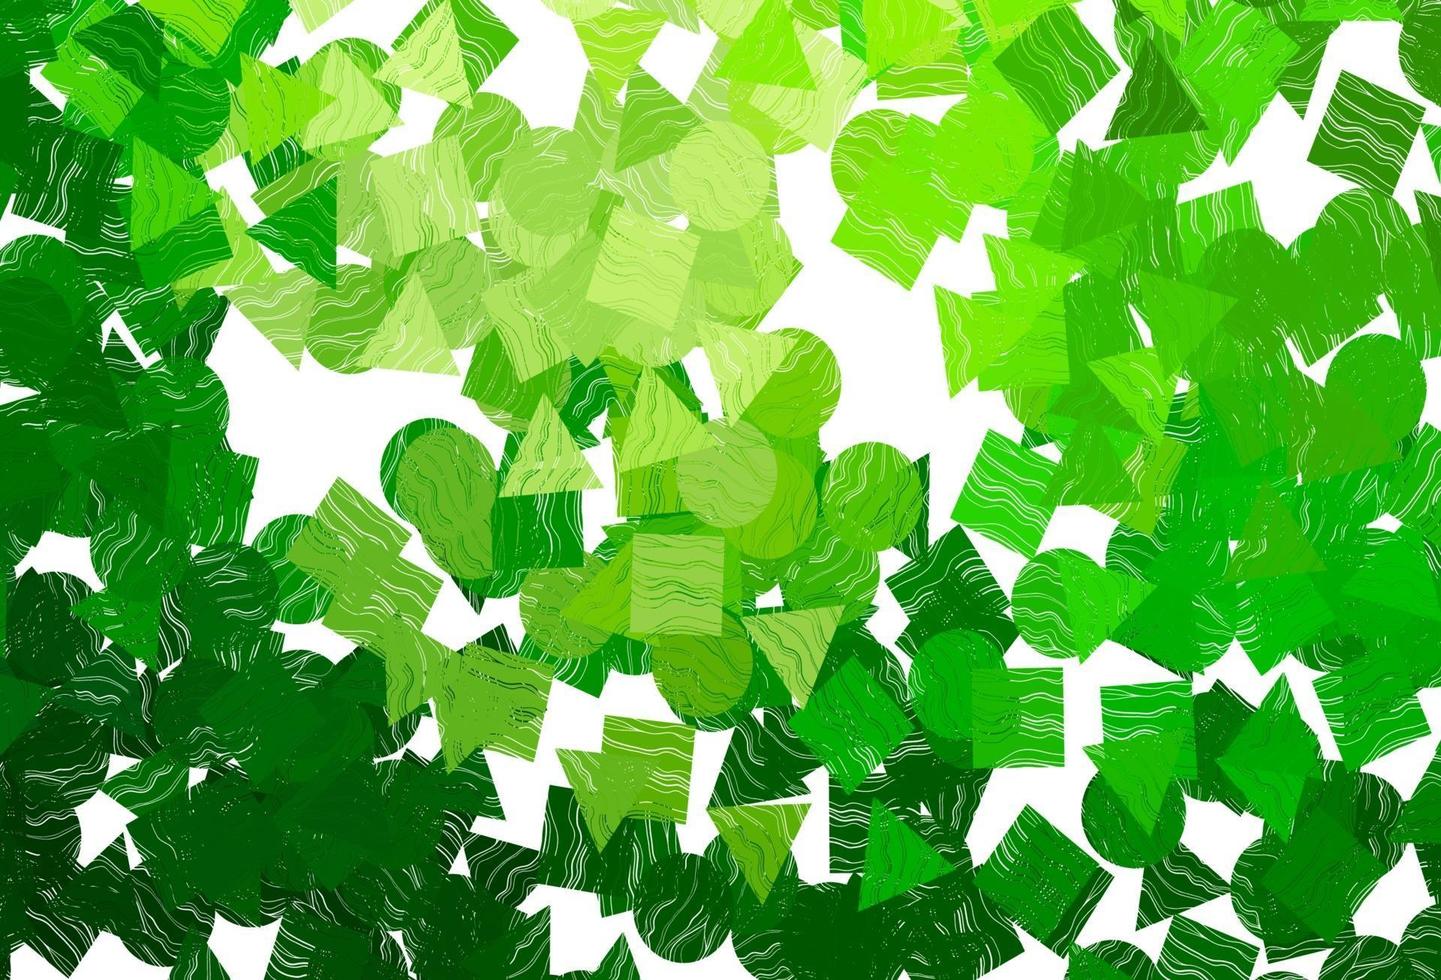 sfondo vettoriale verde chiaro con triangoli, cerchi, cubi.